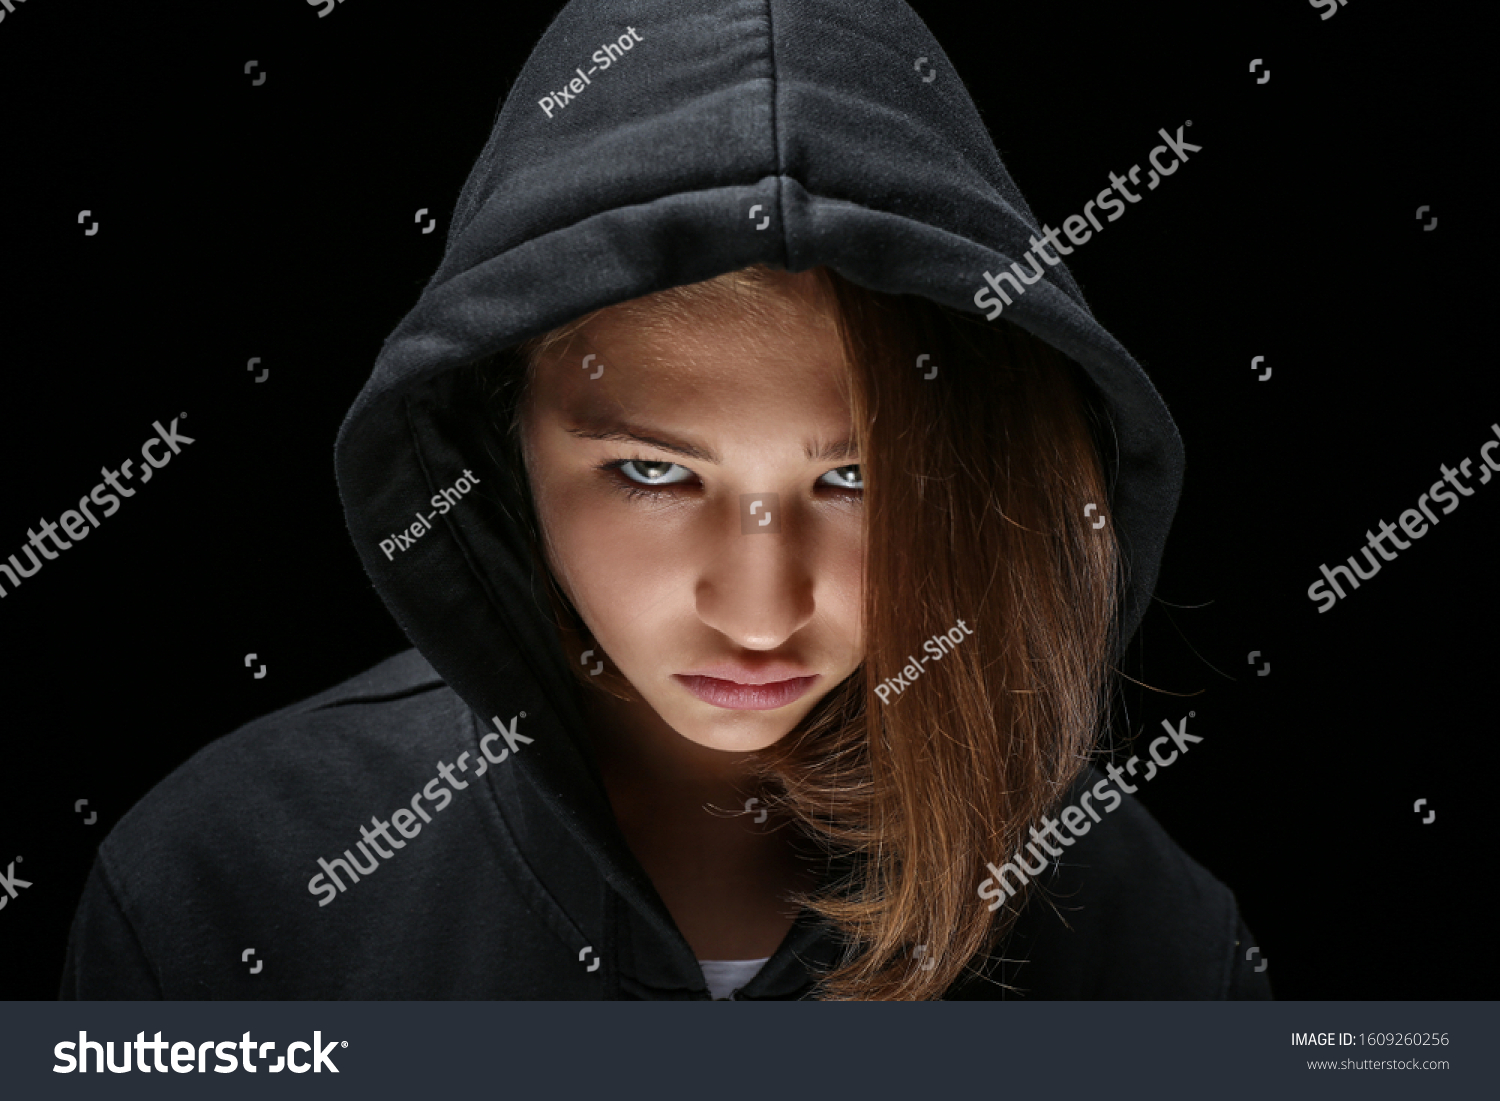 4,548 Grumpy teenagers Images, Stock Photos & Vectors | Shutterstock